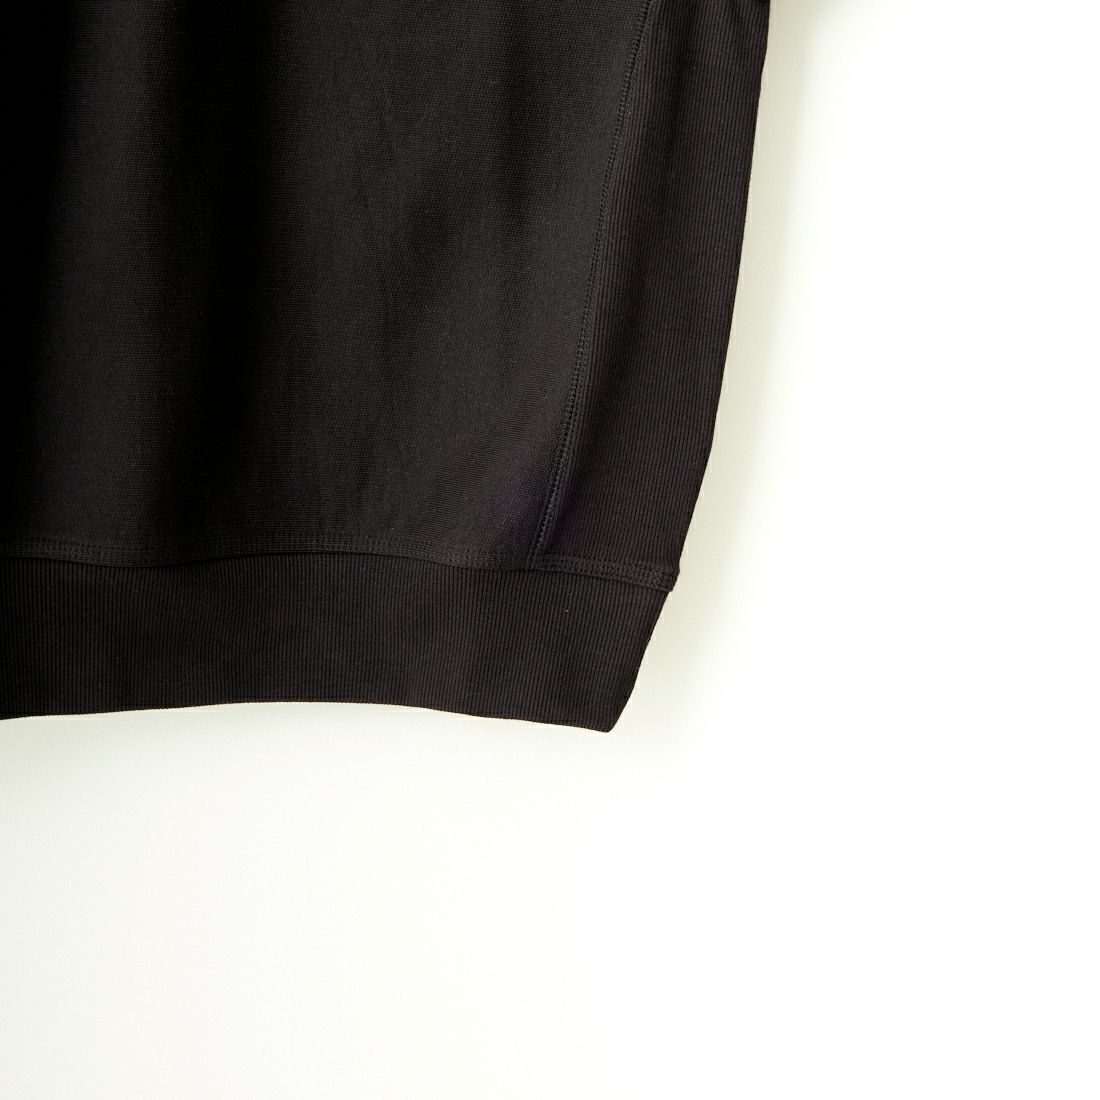 carhartt WIP [カーハートダブリューアイピー] ハーフジップアメリカンスクリプトスウェットシャツ [I027014] BLACK